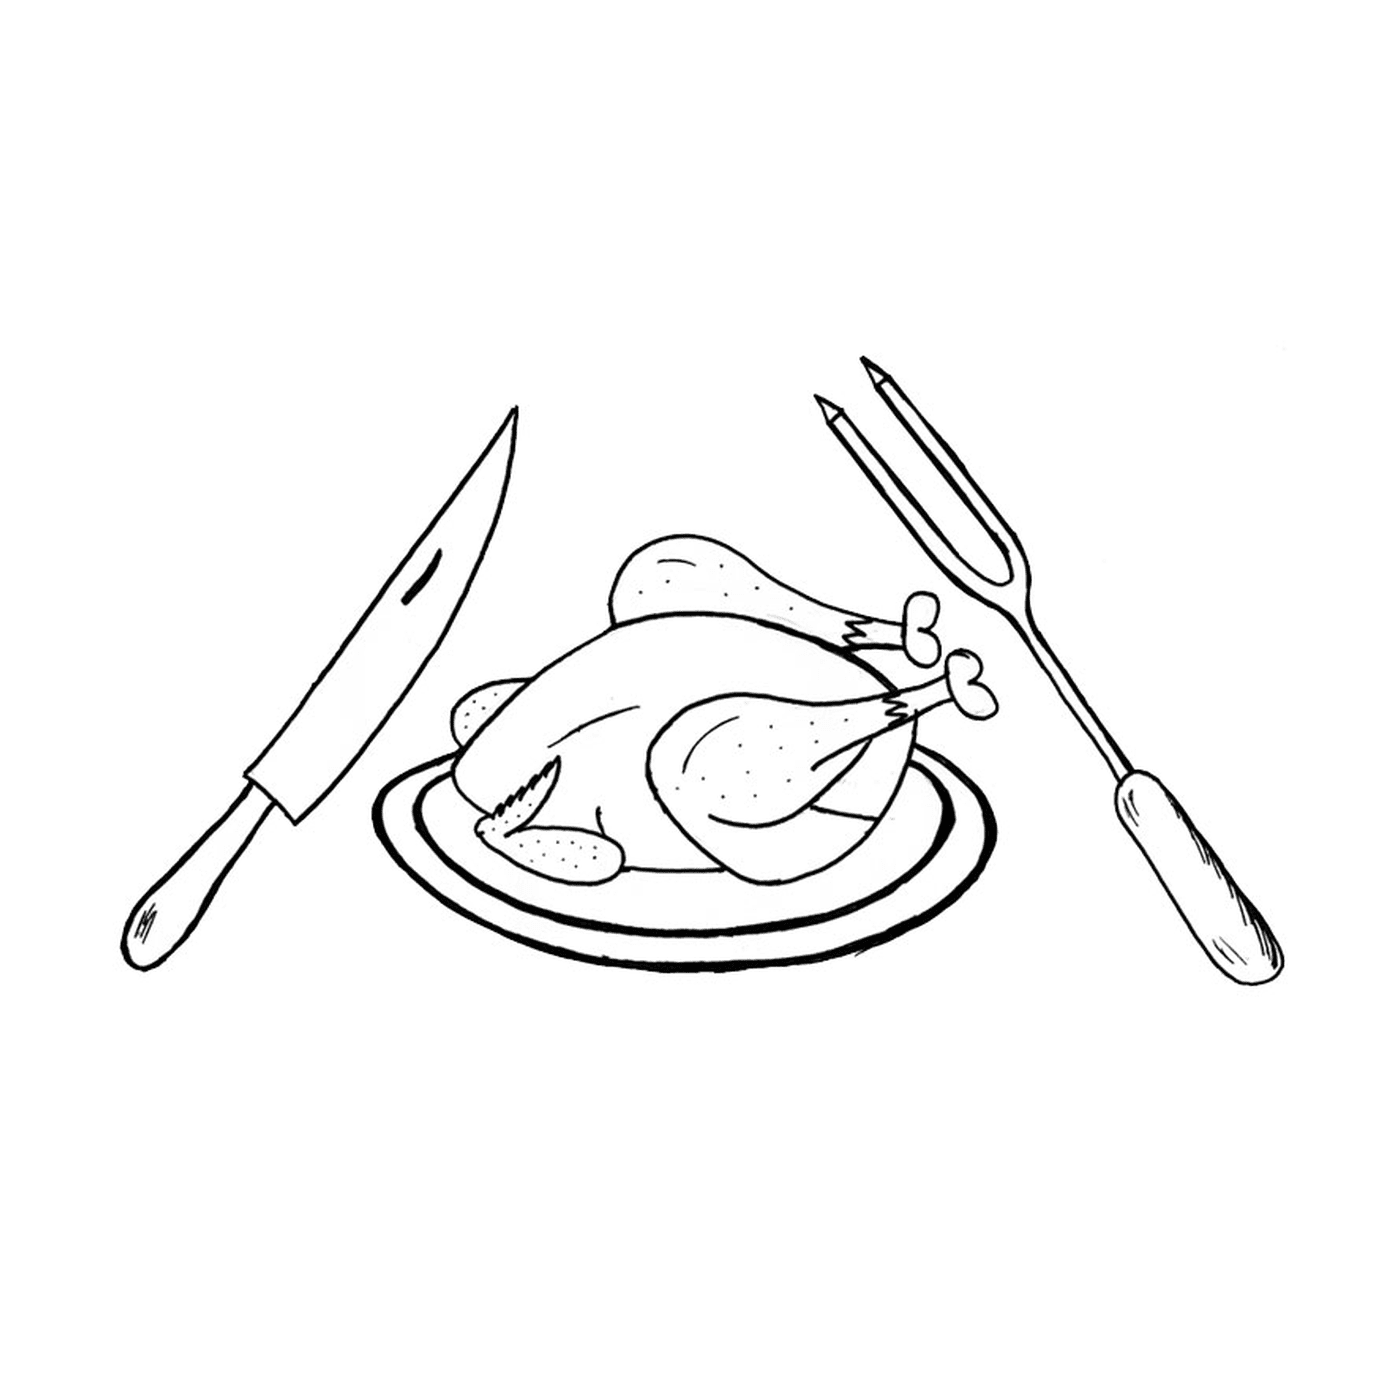  Un pollo en un plato con un cuchillo, un tenedor y un tenedor 